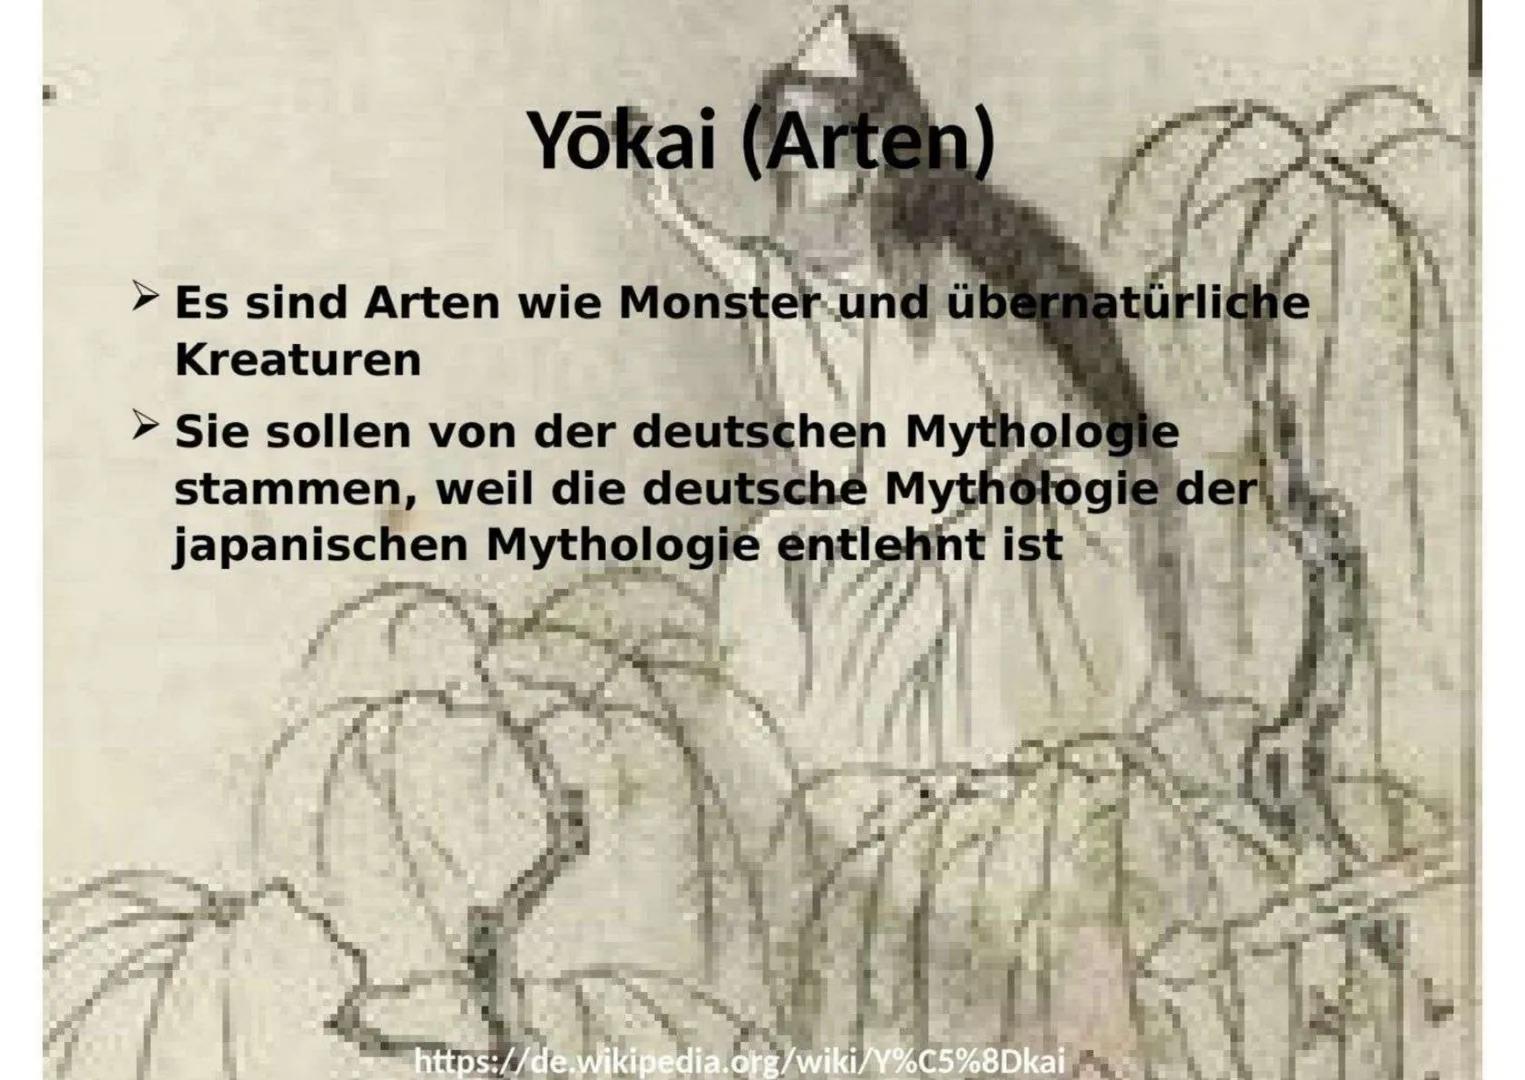 Yōkai (Arten)
Es sind Arten wie Monster und übernatürliche
Kreaturen
Sie sollen von der deutschen Mythologie
stammen, weil die deutsche Myth